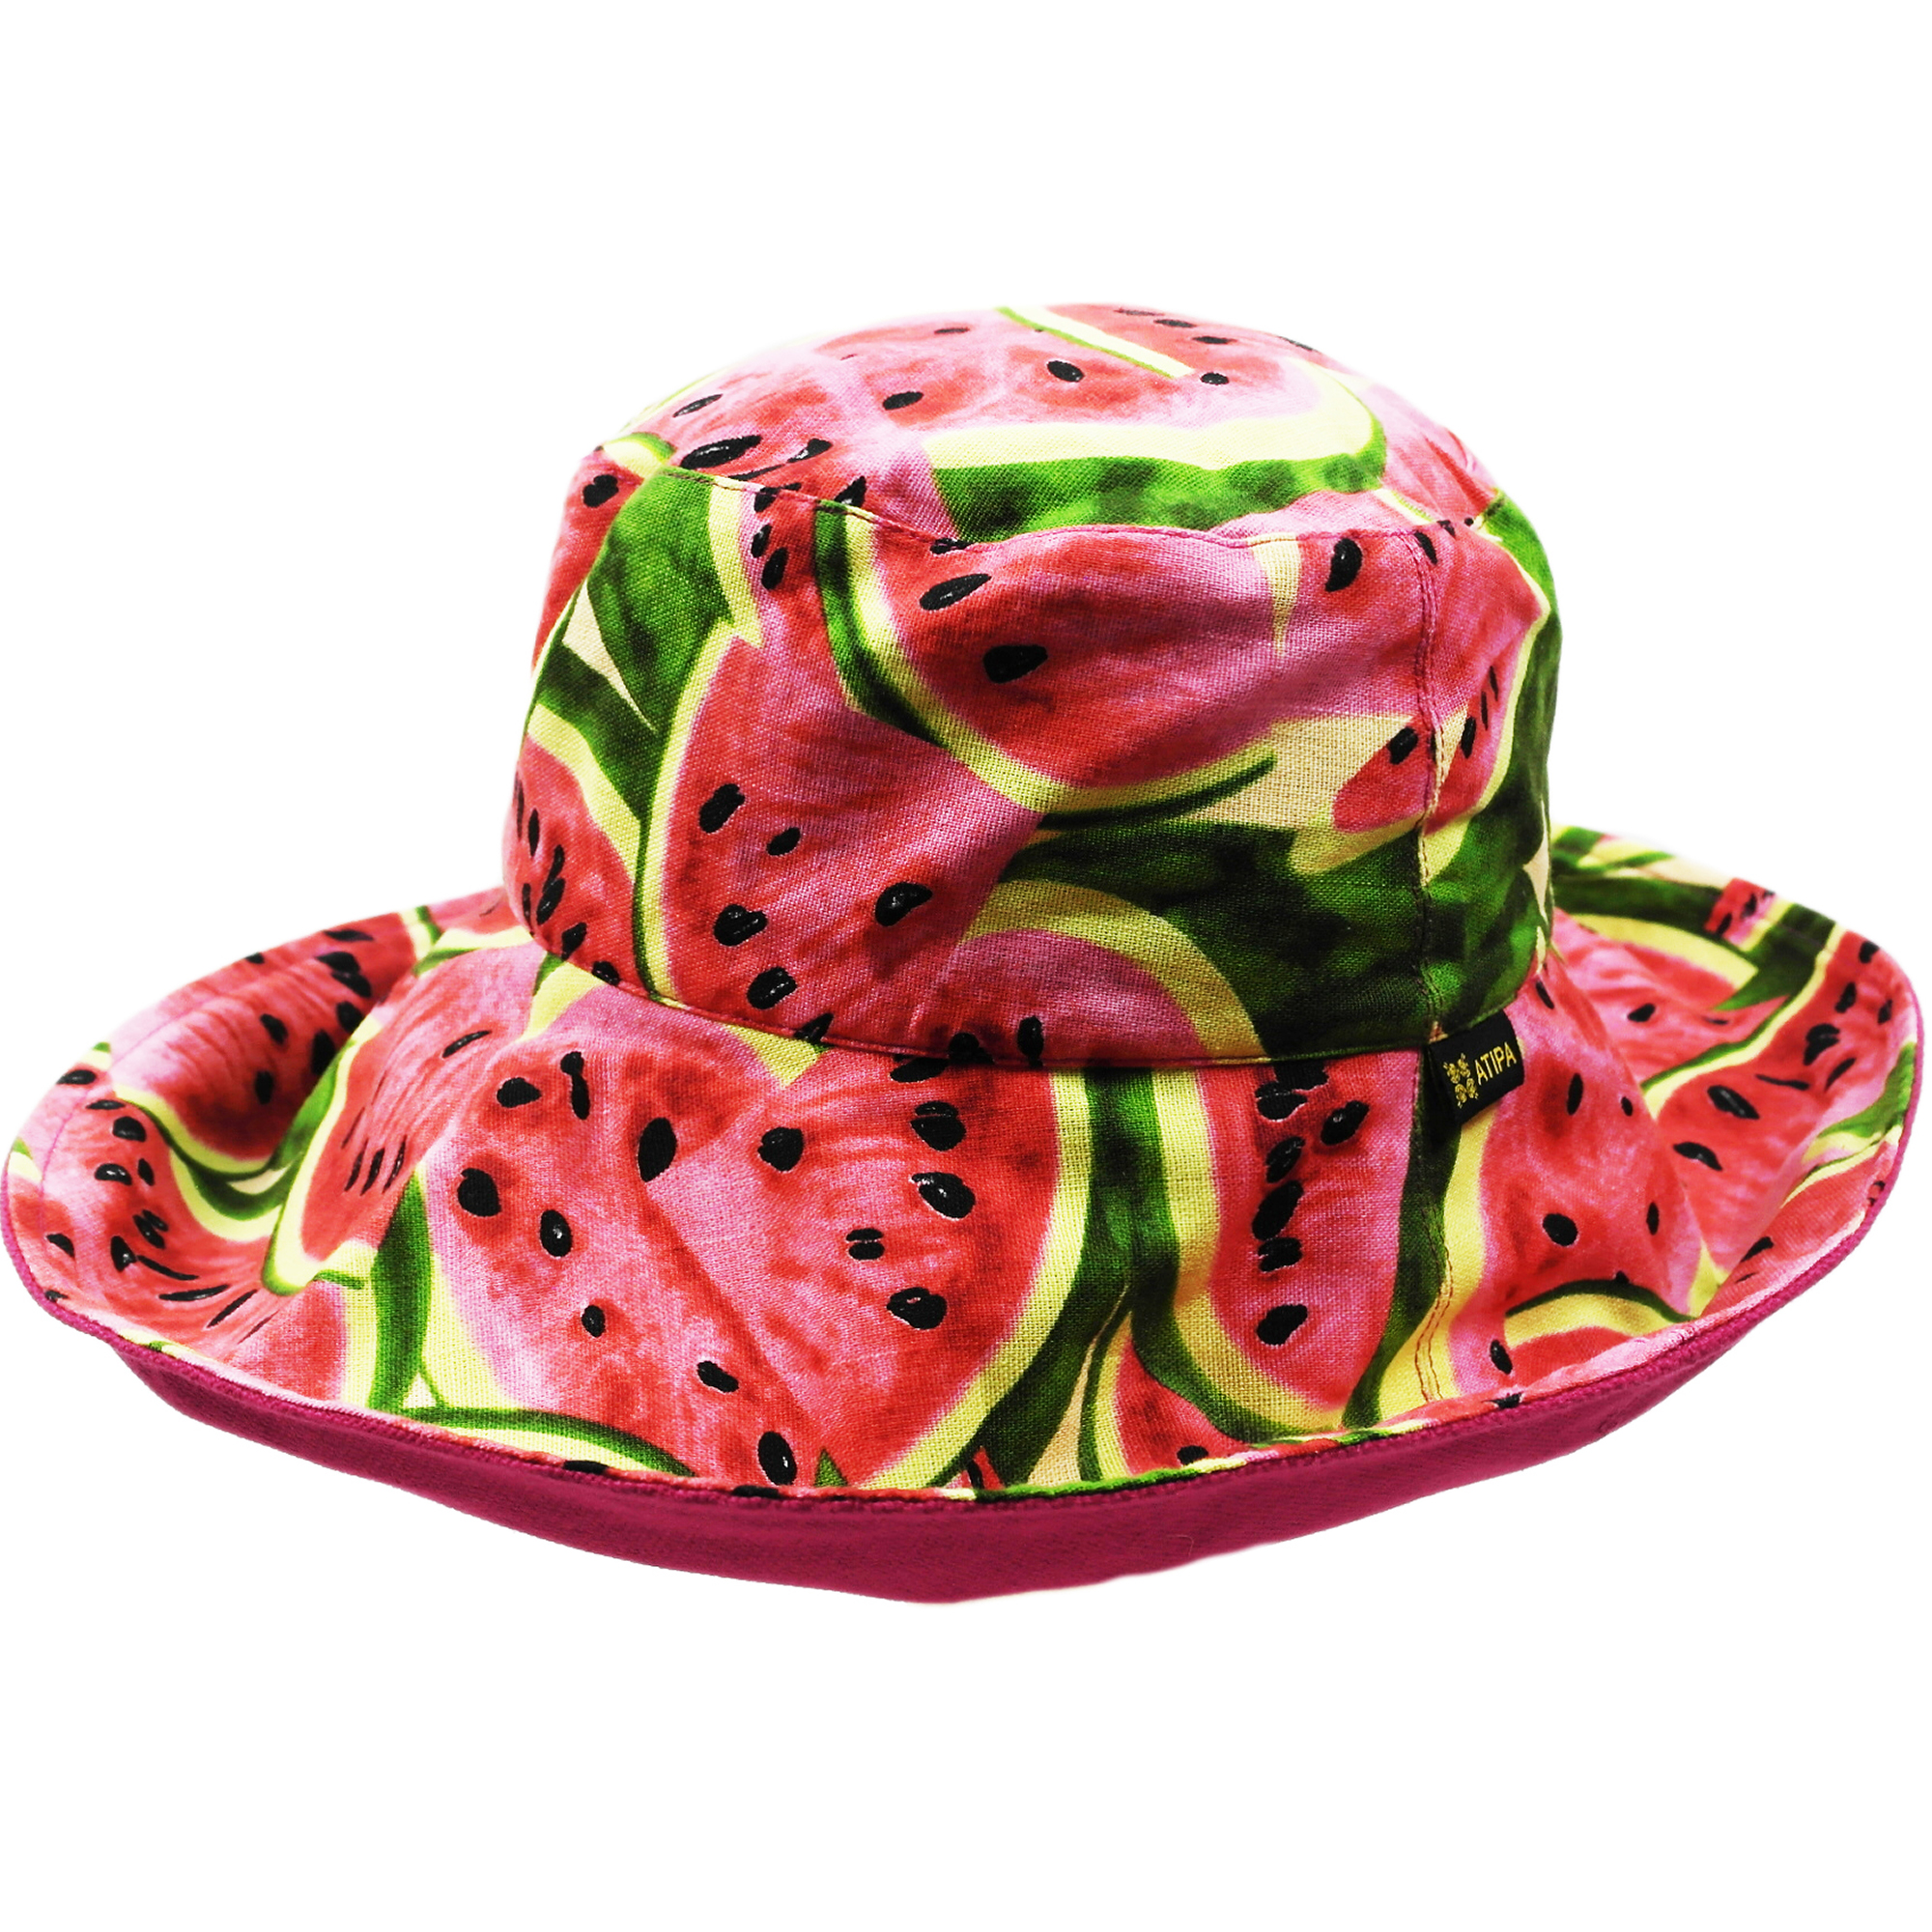 Super Watermelon